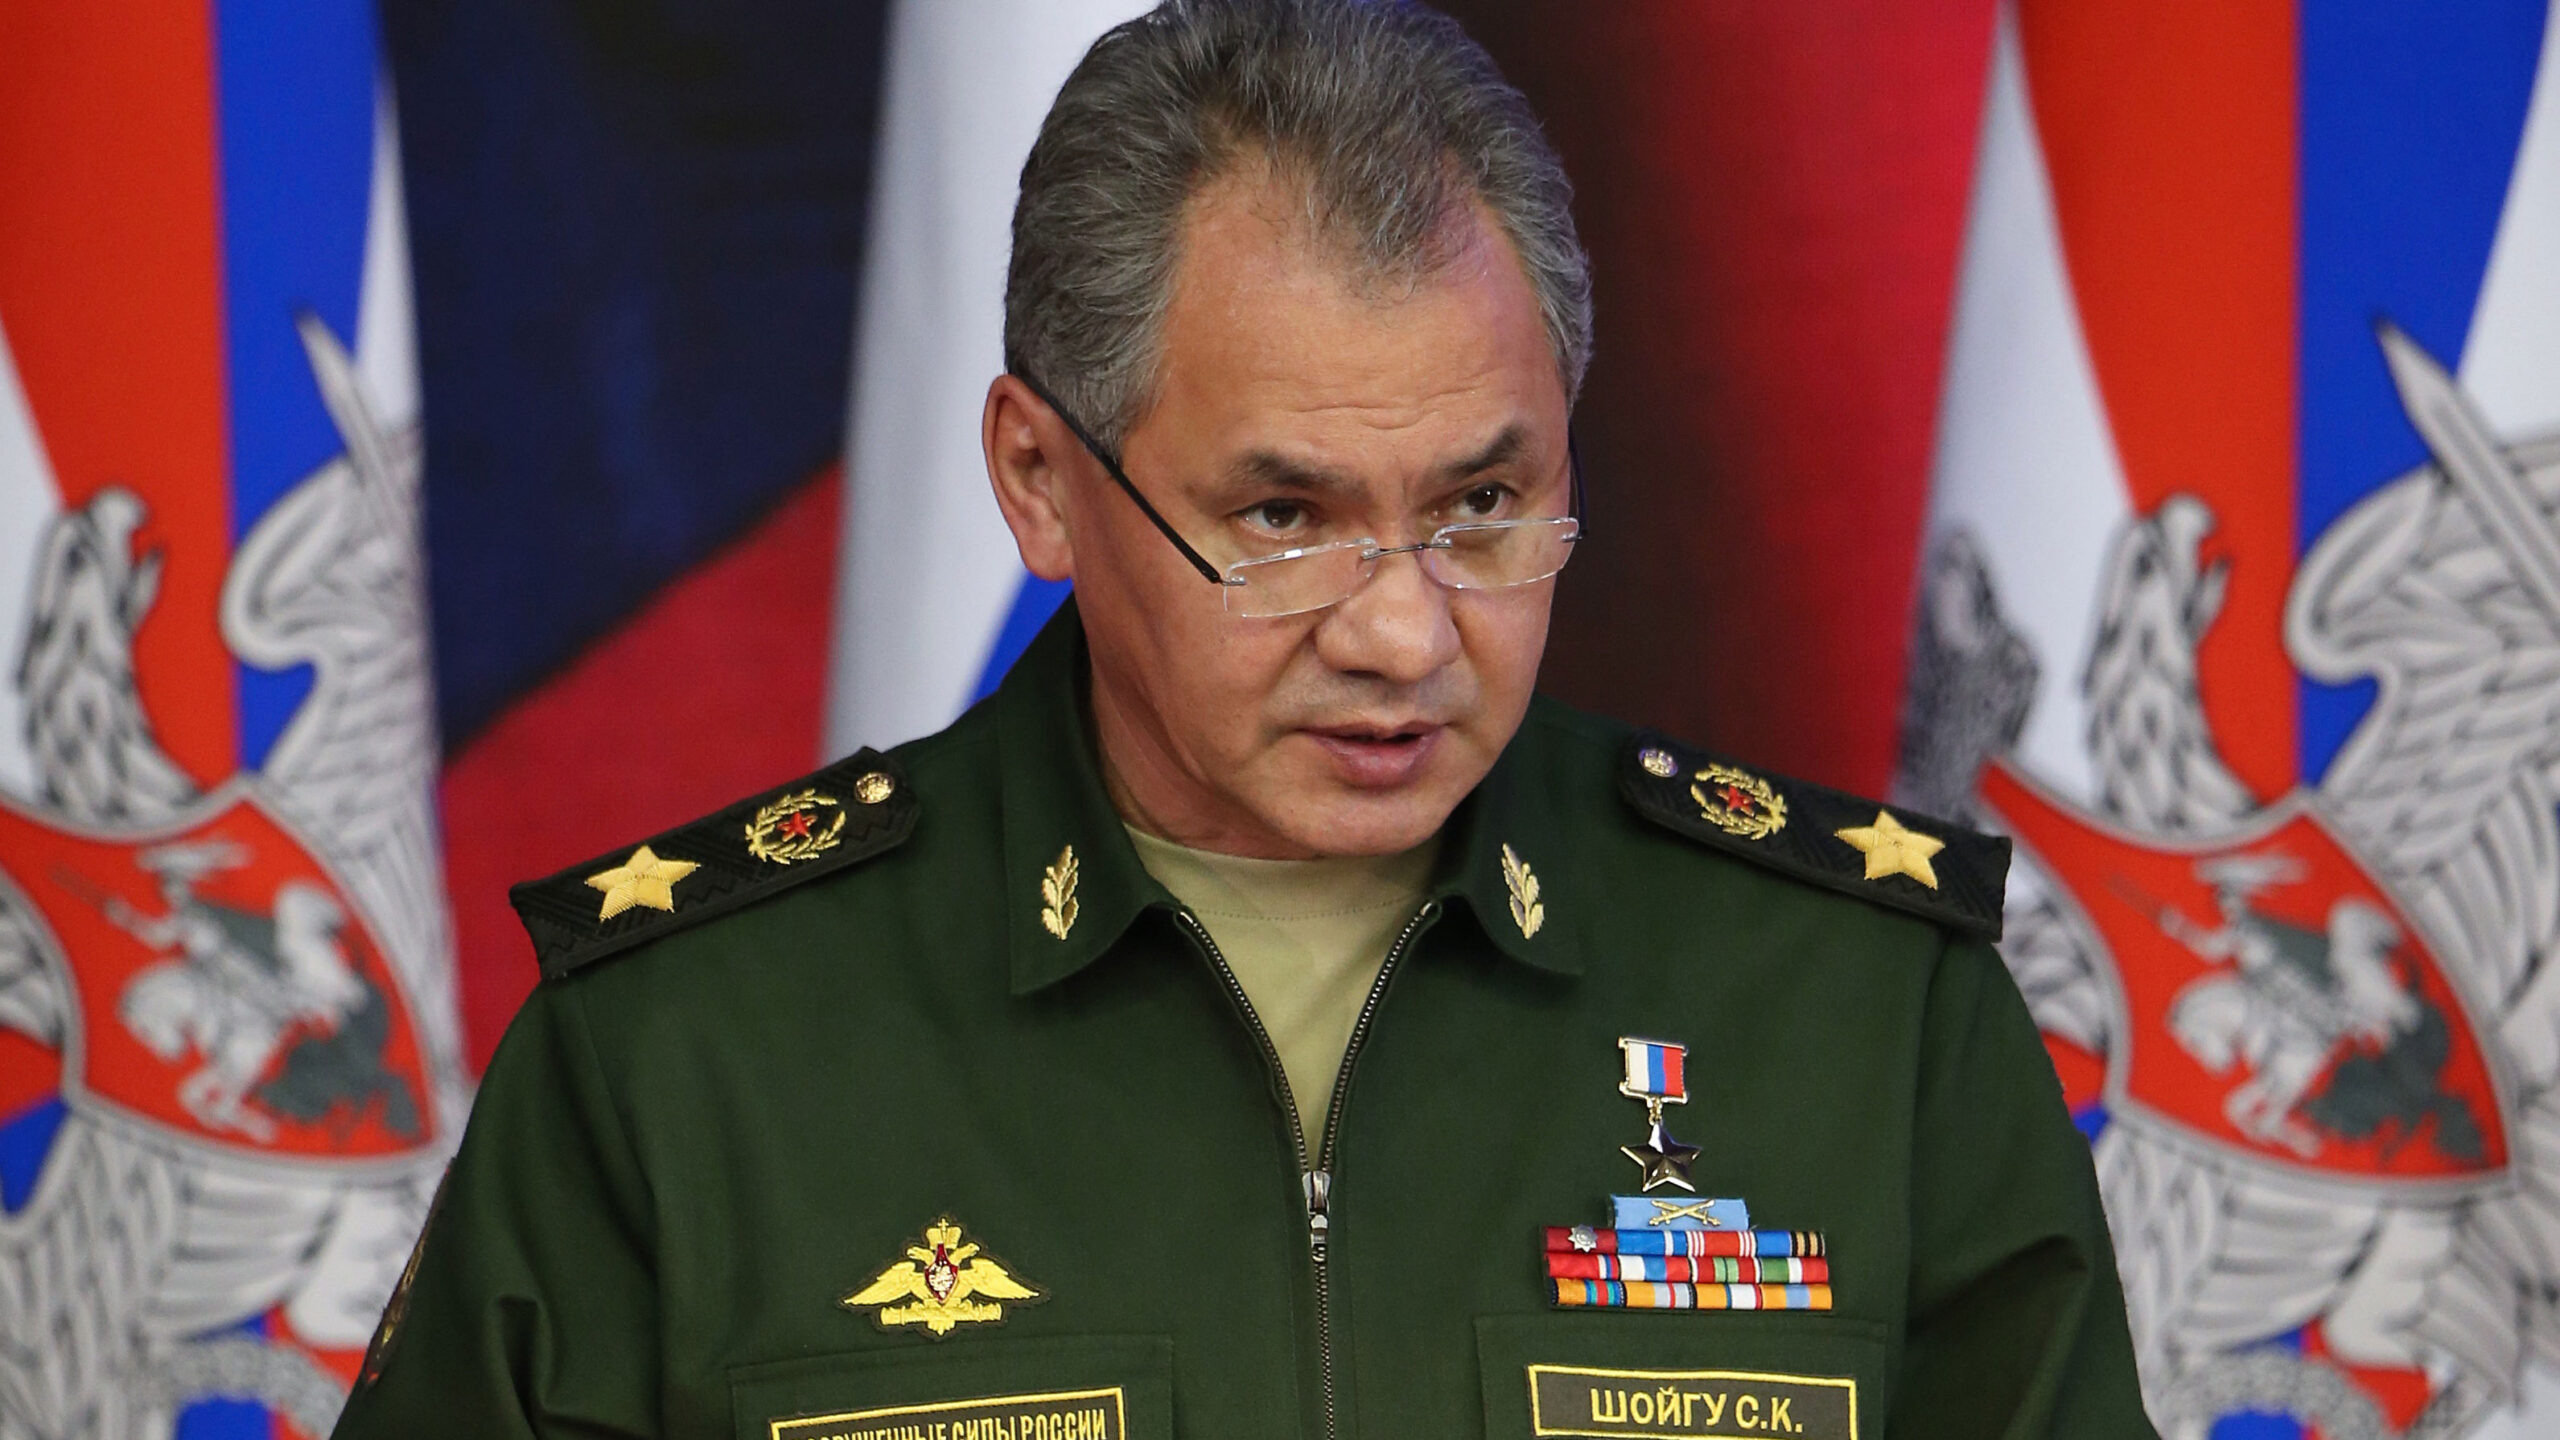 Руският министър на отбраната Шойгу посети войските в Украйна, съобщи военното ведомство в Москва